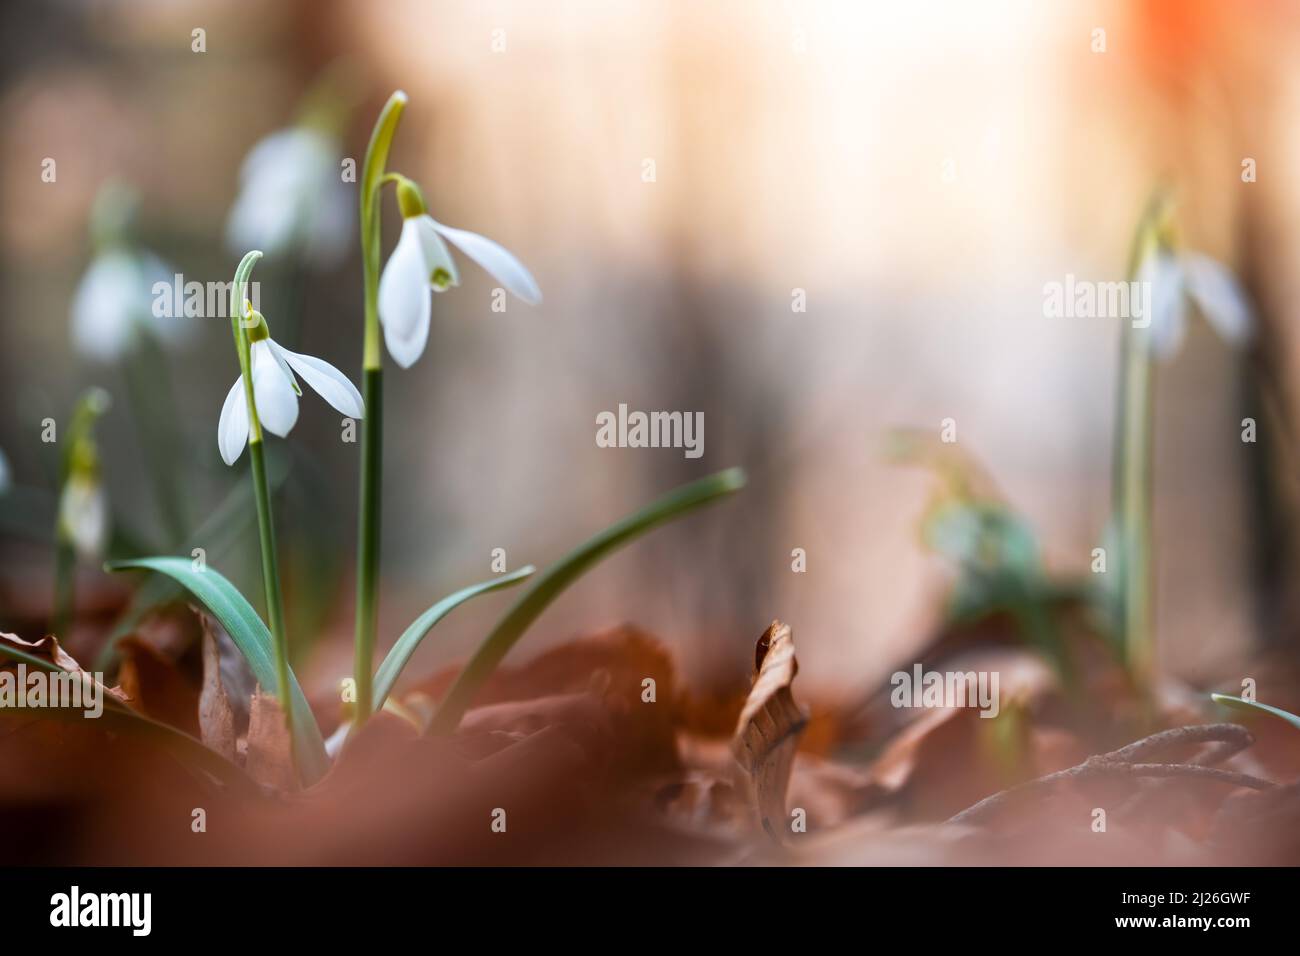 Snowdrop flores en primavera pradera bosque closeup. Fotografía de naturaleza macro Foto de stock